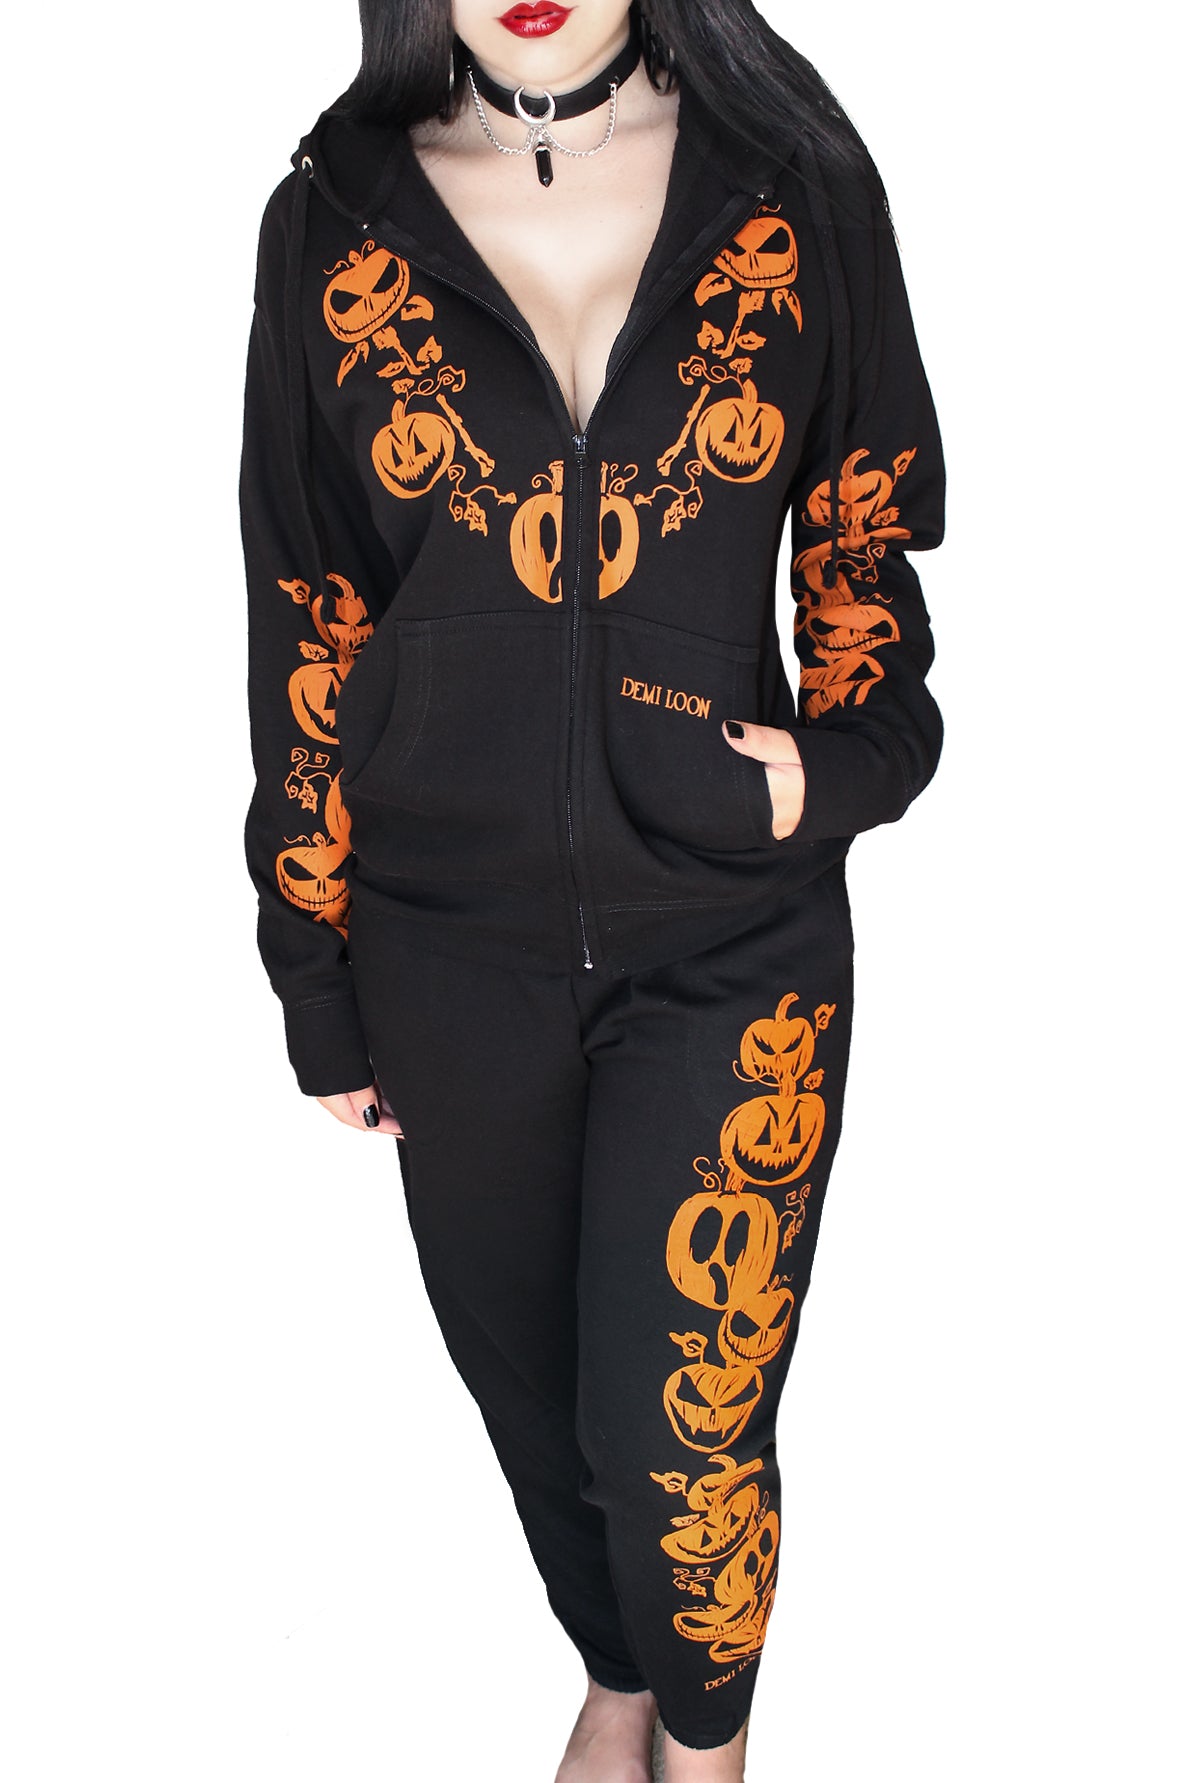 Coors Light Night Pumpkin Hoodie Zip Hoodie Gift Halloween For Men And  Women - Freedomdesign